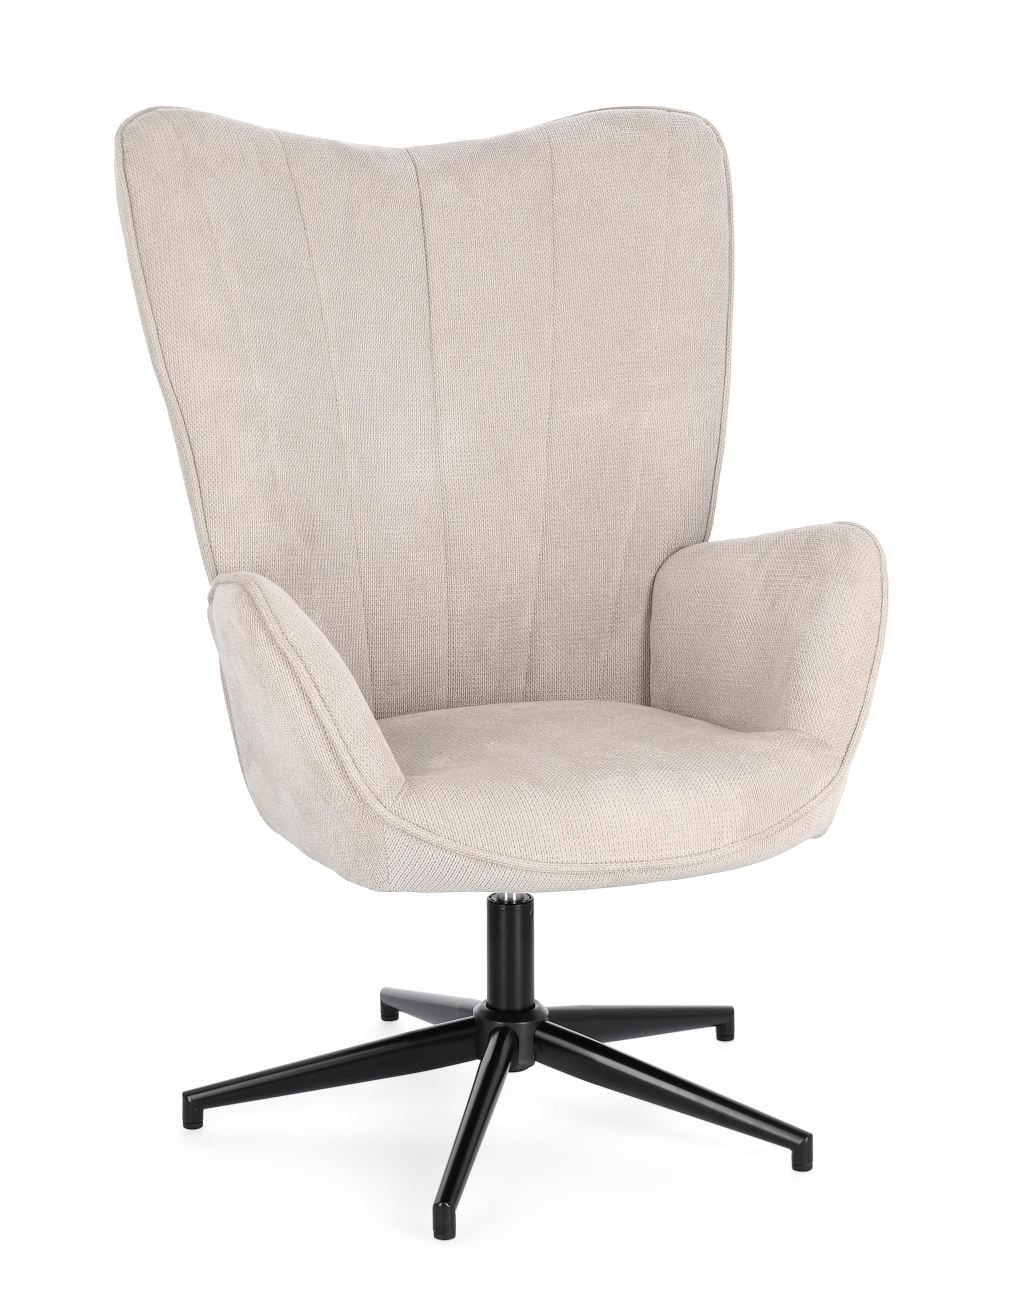 Der Drehsessel Inas überzeugt mit seinem modernen Stil. Gefertigt wurde er aus Stoff, welcher einen Beigen Farbton besitzt. Das Gestell ist aus Metall und hat eine schwarze Farbe. Der Sessel besitzt eine Sitzhöhe von 50 cm.